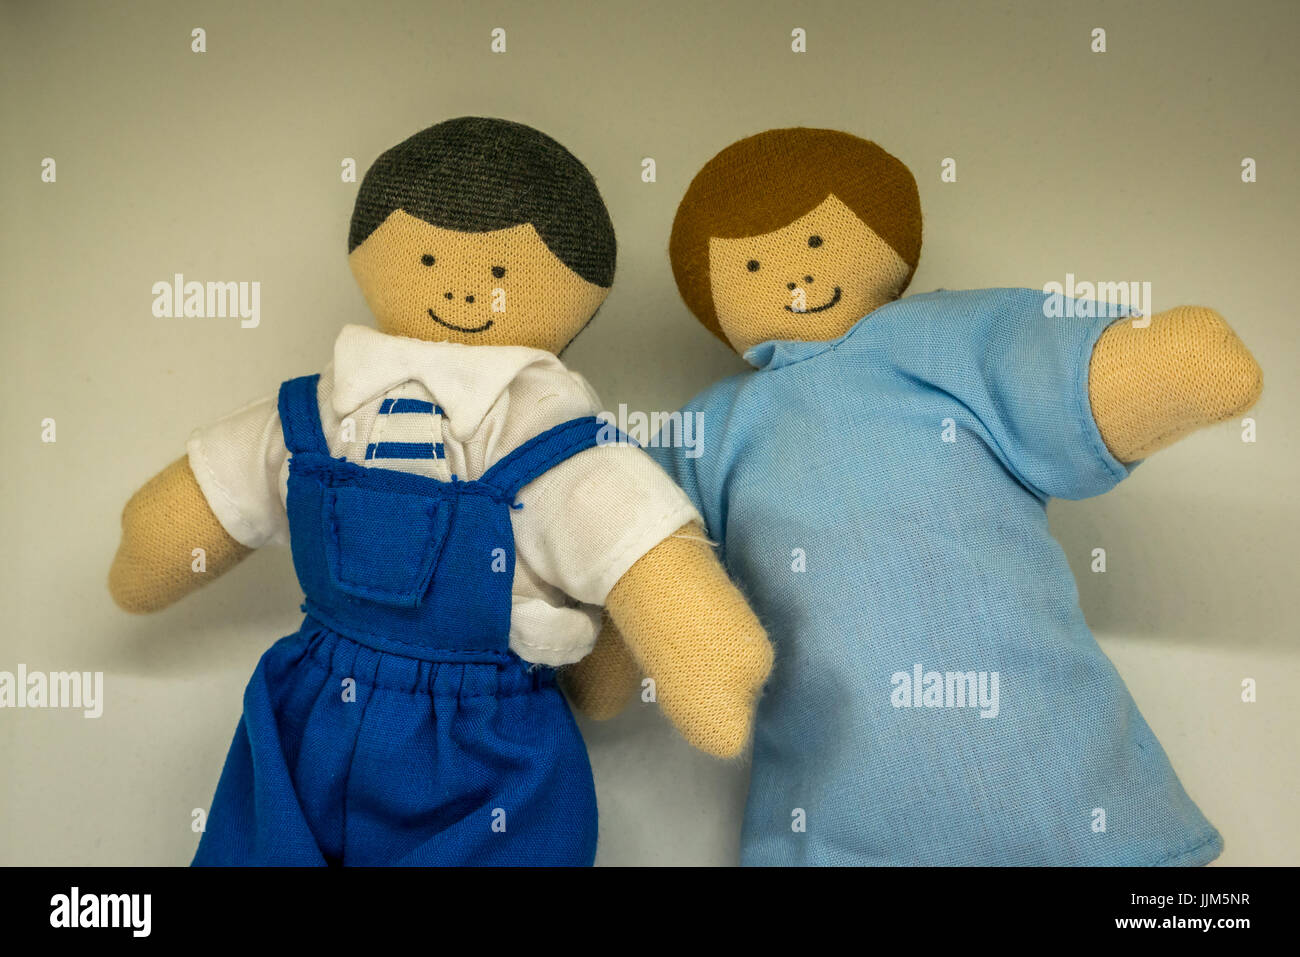 Ancora in vita del maschio e femmina bambole giocattolo contro uno sfondo bianco per rappresentare i genitori, giovane, i membri della famiglia, relazioni, matrimonio, generi Foto Stock